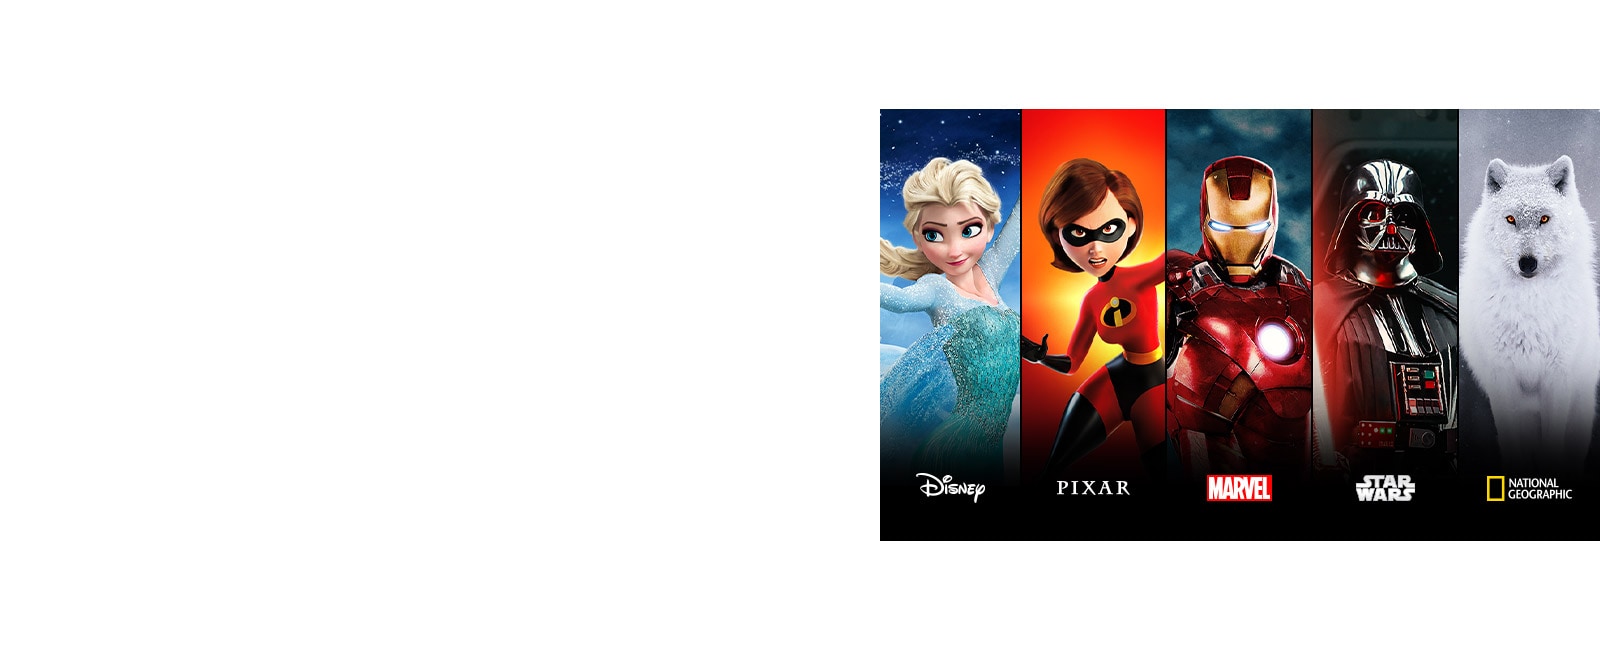 Các thẻ tựa phim Disney Moana, Pixar Incredibles, Marvel Iron Man, Star Wars và National Geographic